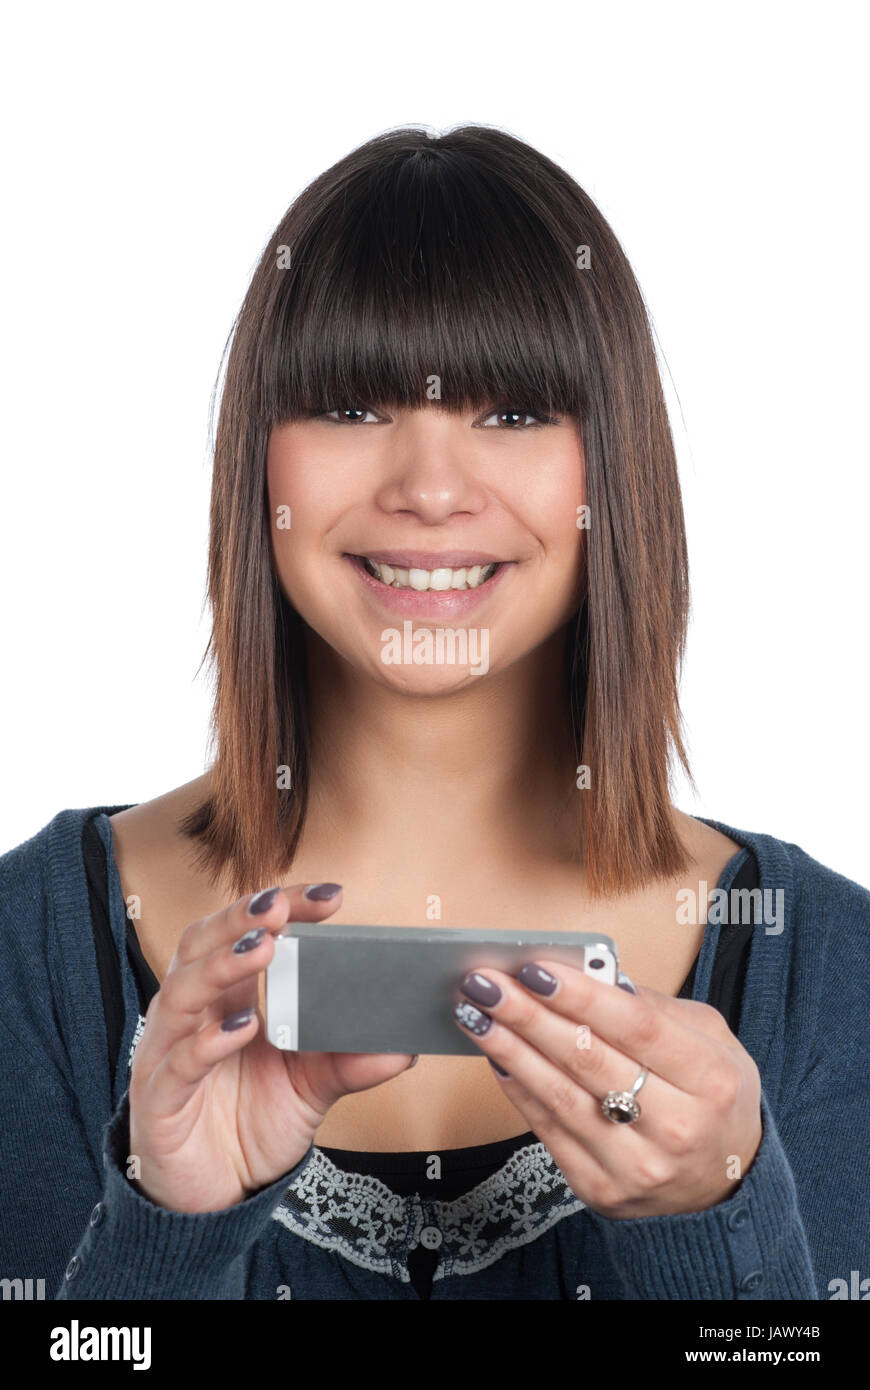 Freigestelltes Foto einer jungen Frau, die ein Smartphone waagerecht hält Stock Photo